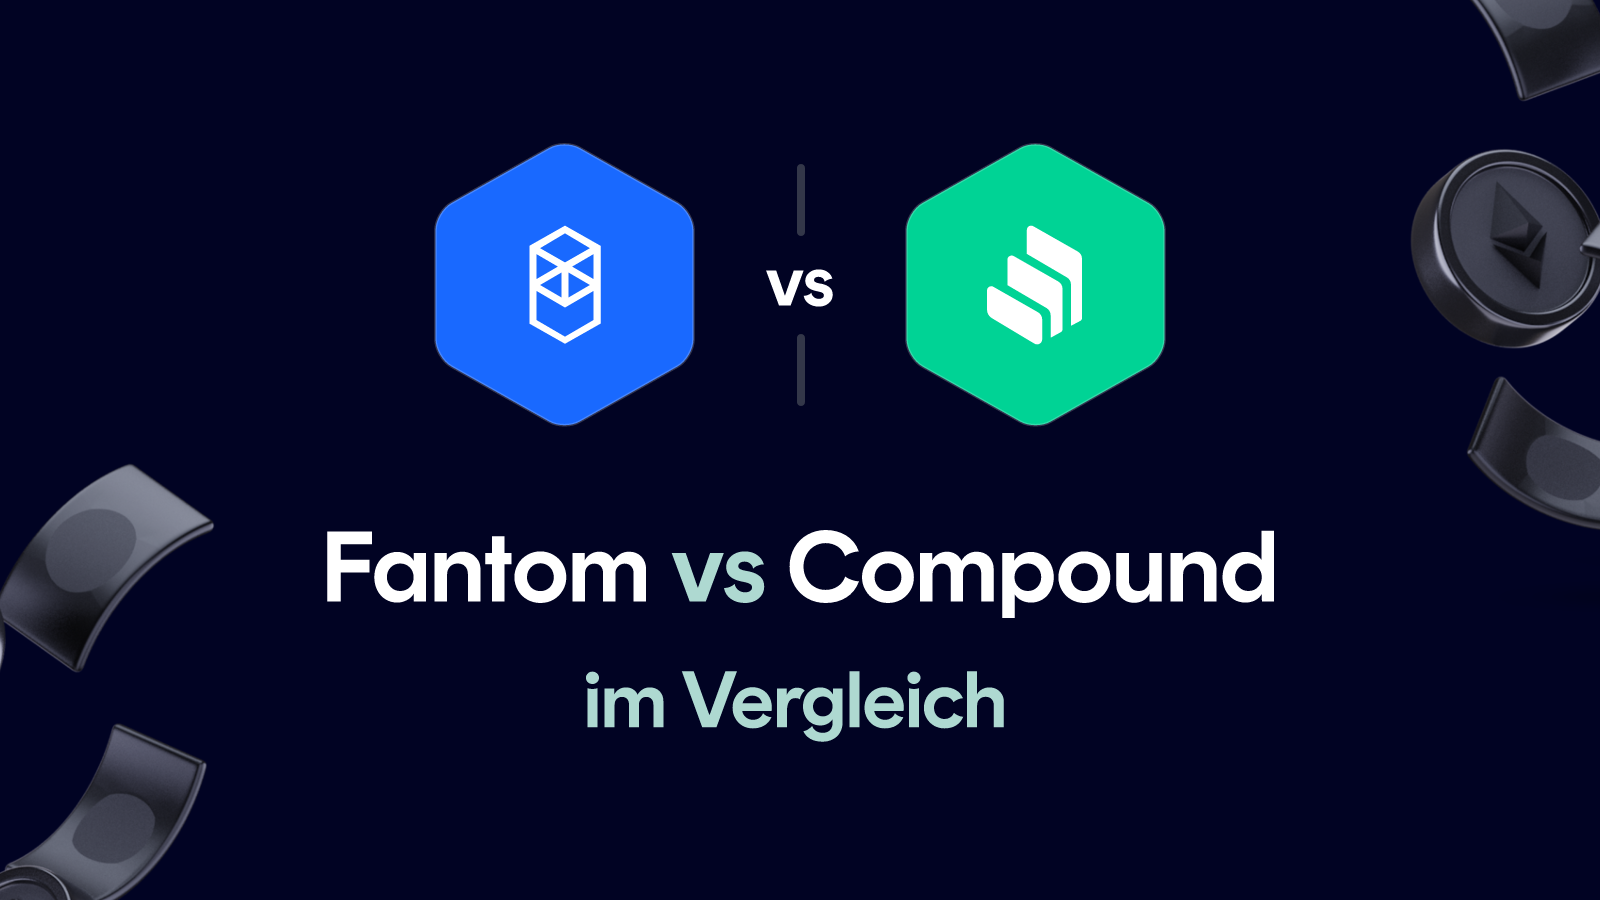 Fantom vs Compound